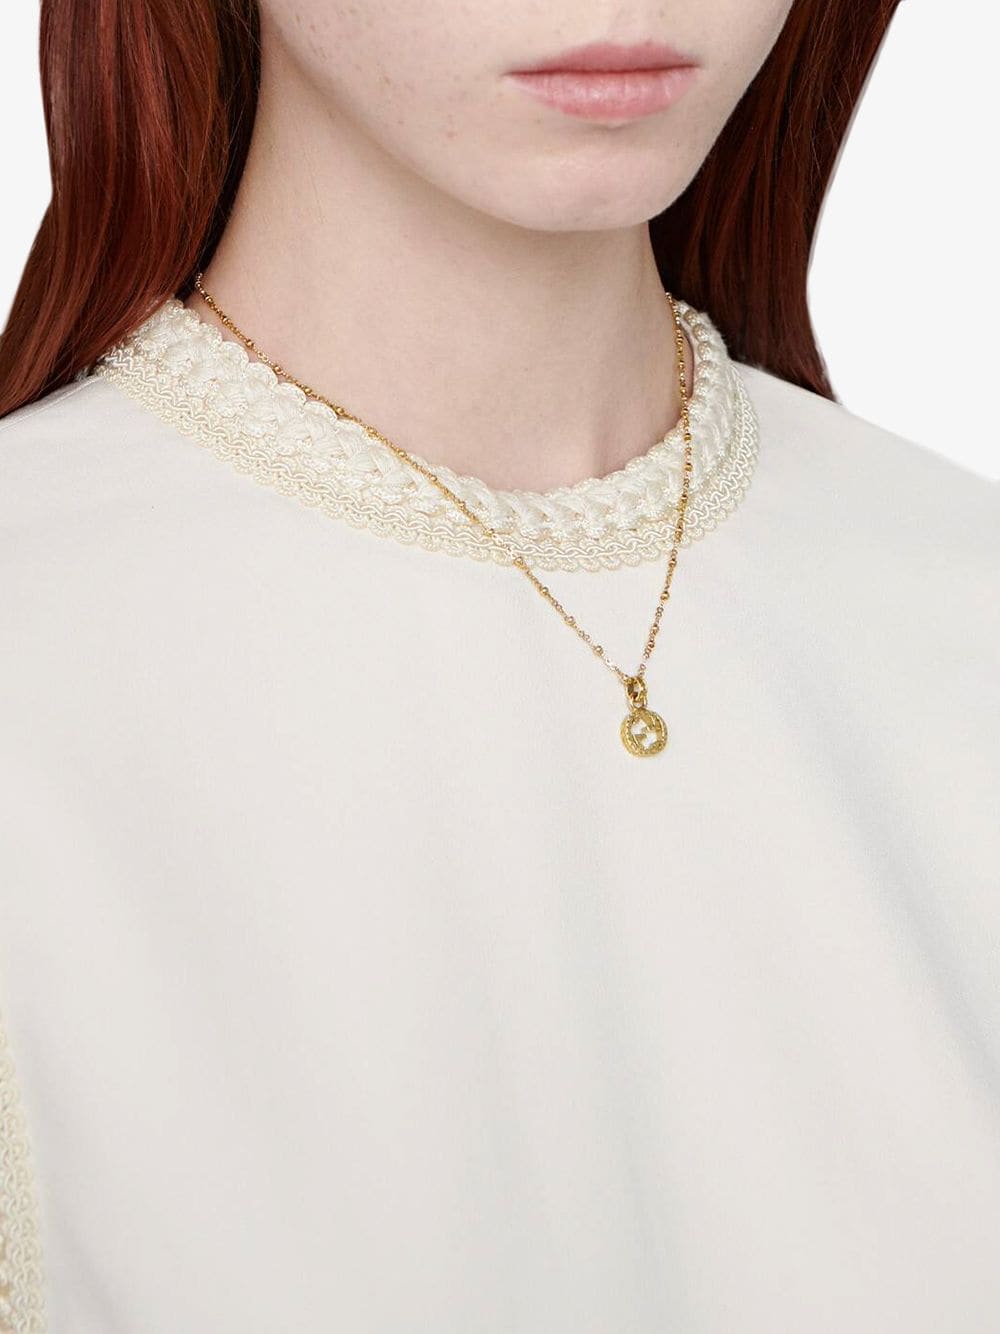 Gucci Iconic Enamel Interlocking GG Pendant Necklace - Ruby Lane